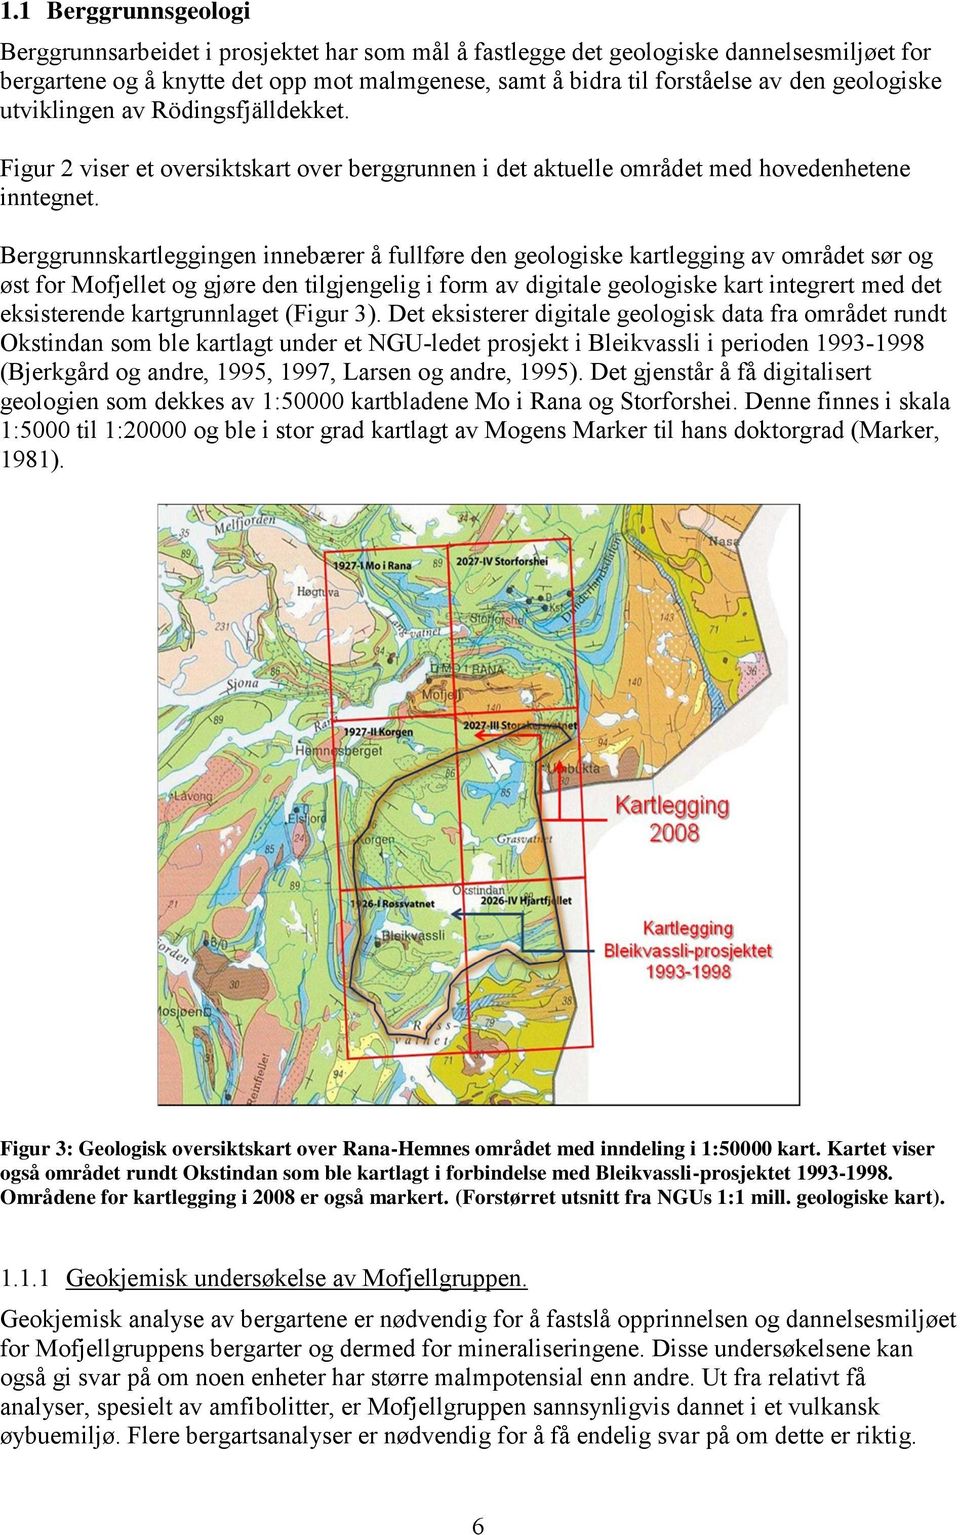 Berggrunnskartleggingen innebærer å fullføre den geologiske kartlegging av området sør og øst for Mofjellet og gjøre den tilgjengelig i form av digitale geologiske kart integrert med det eksisterende